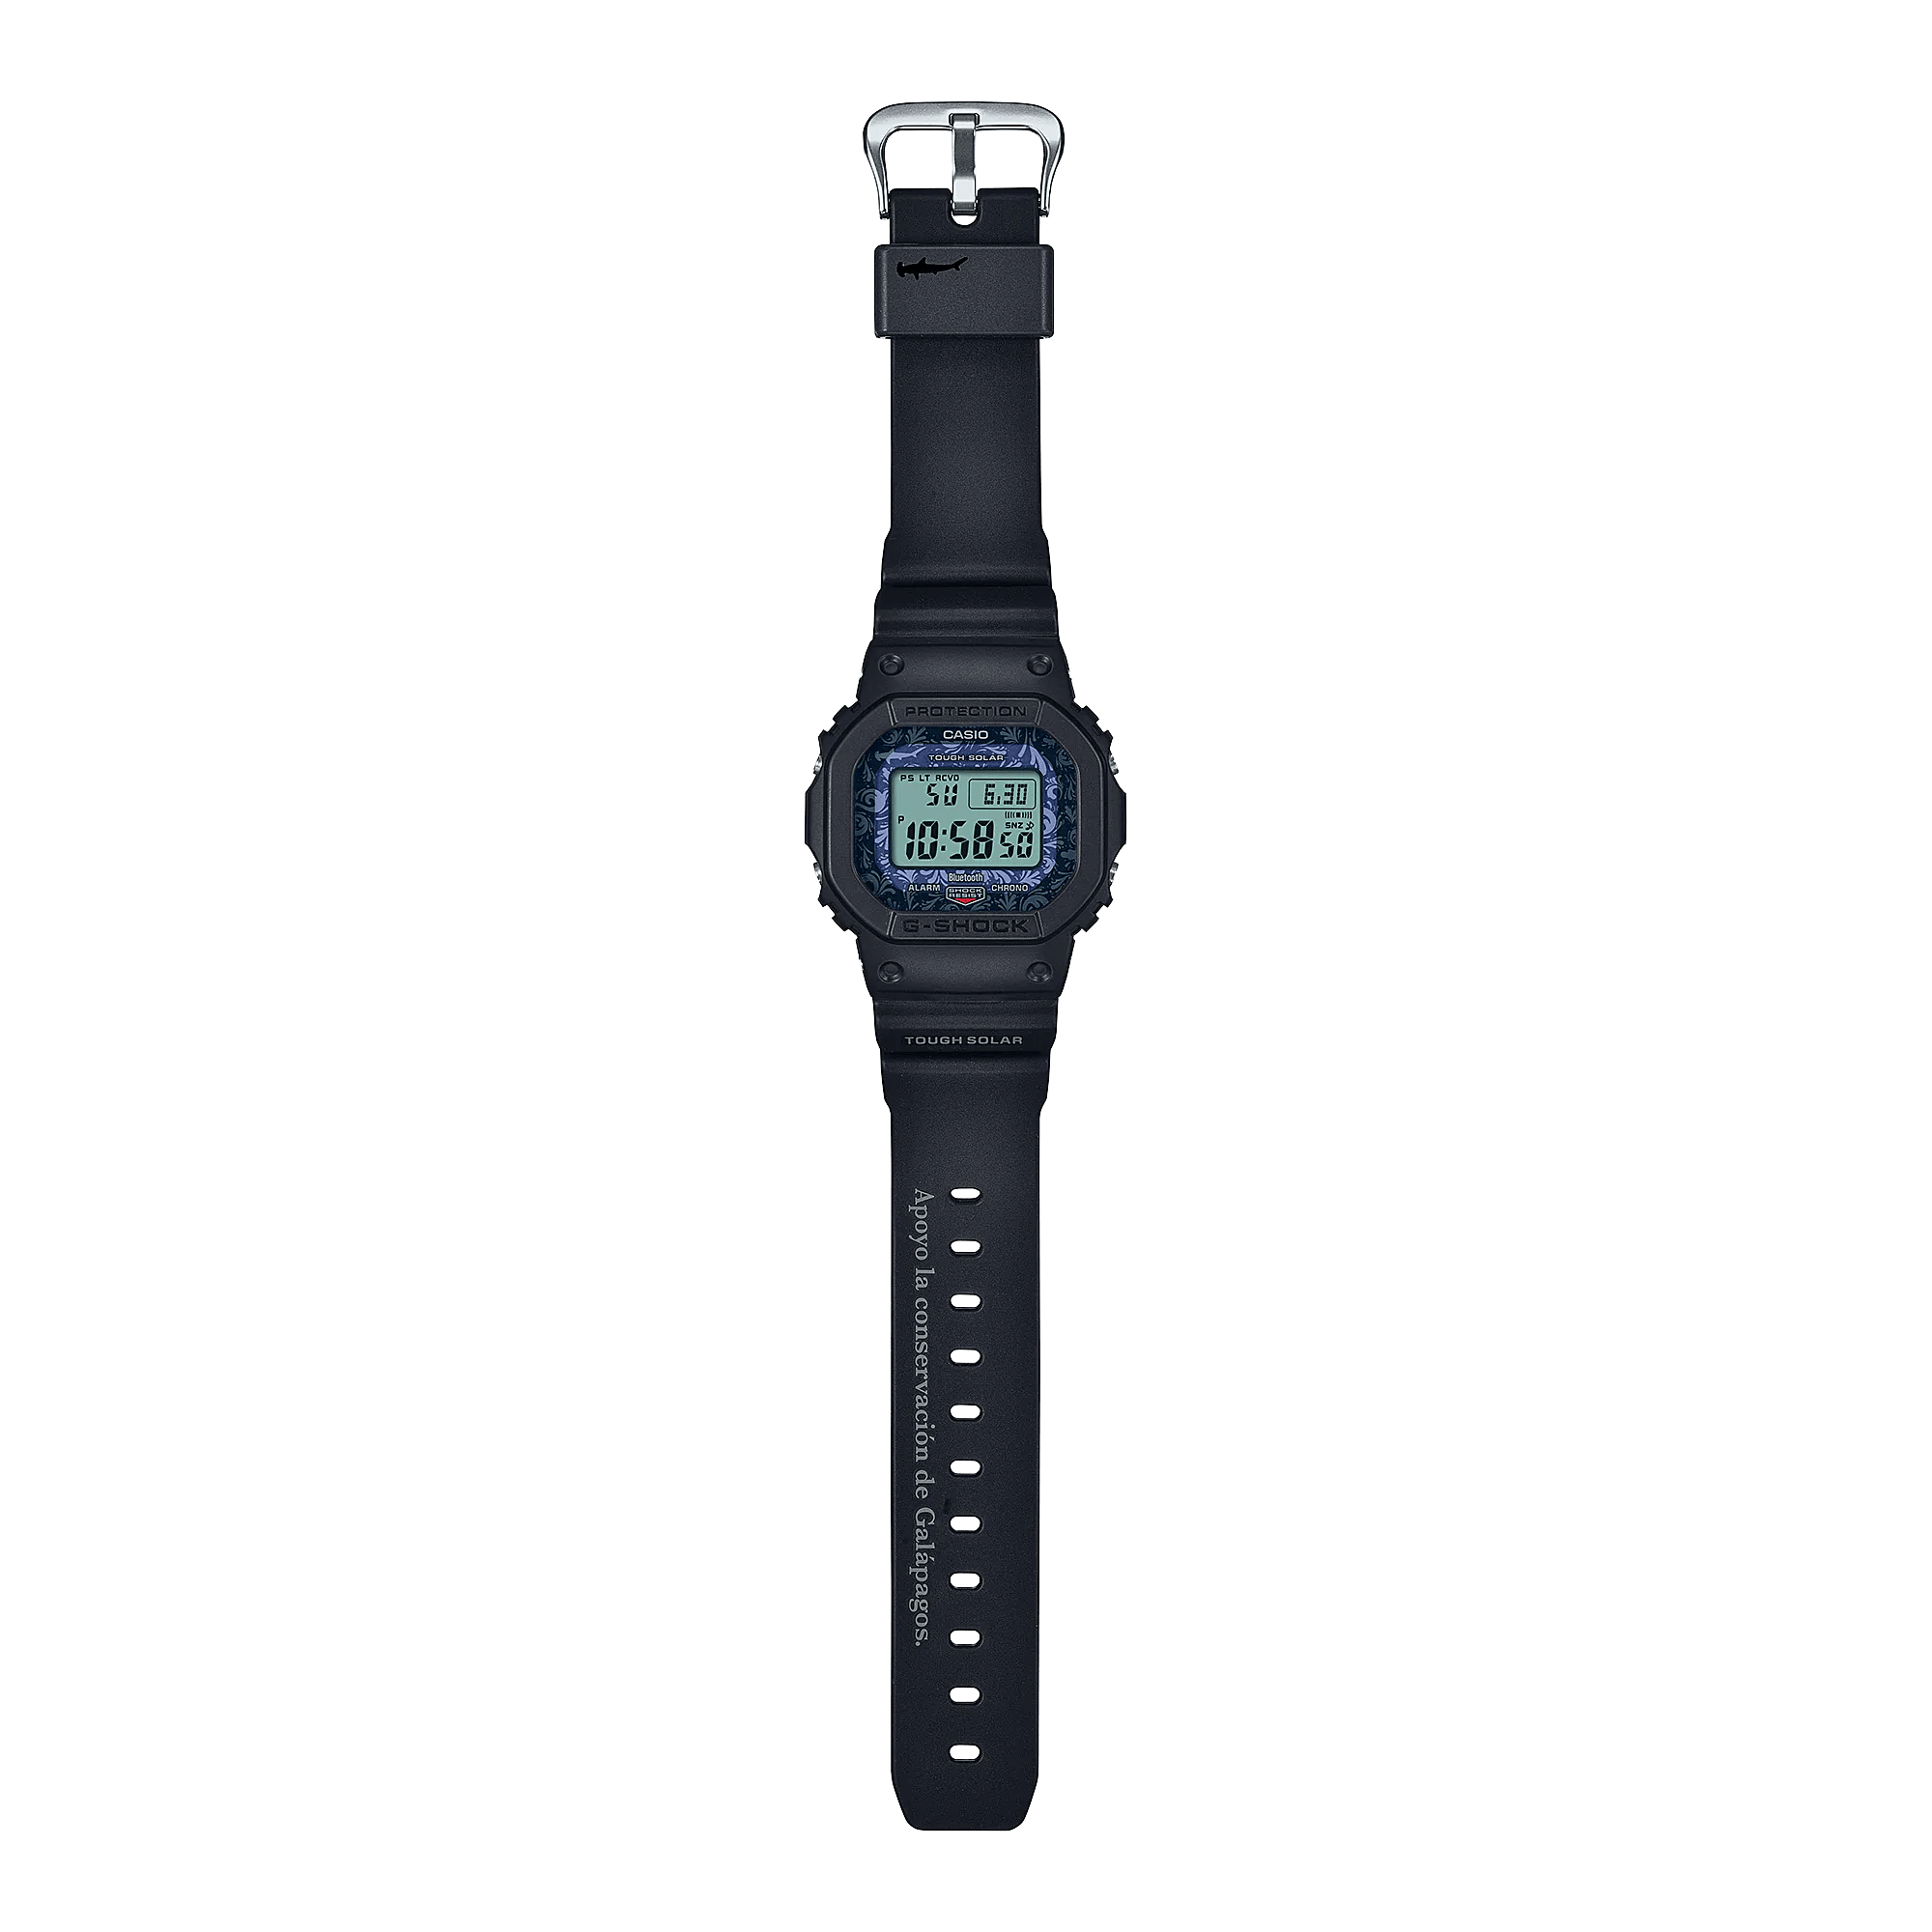 G-Shock Digital Charles Darwin Foundation Men's Watch GWB5600CD1A2